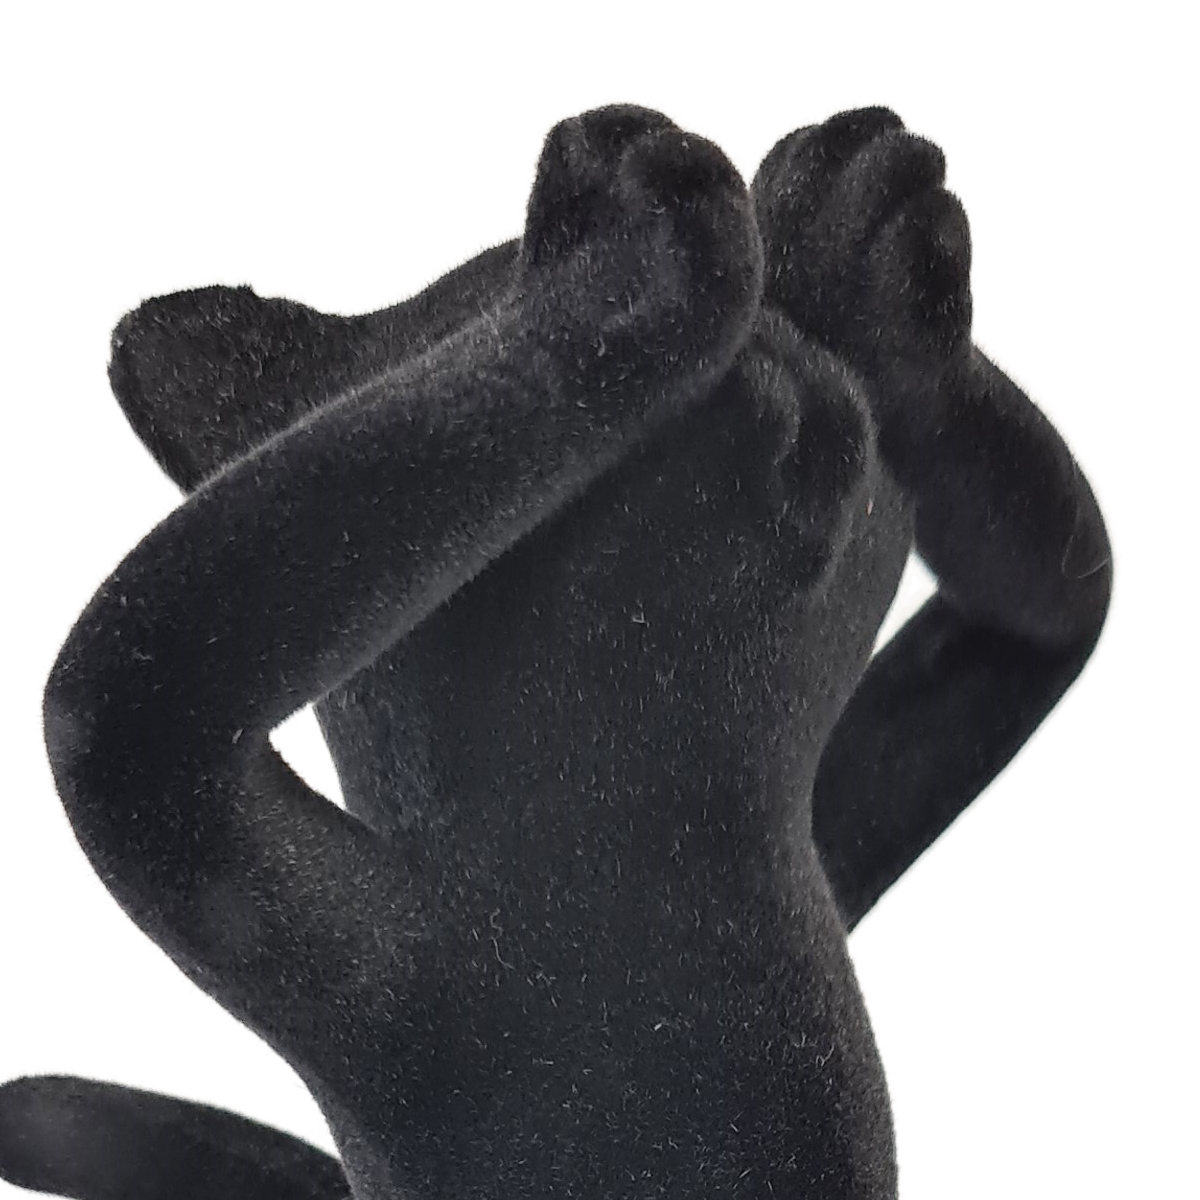 Flocked Black Resin Cat Figurine - Sees Nothing